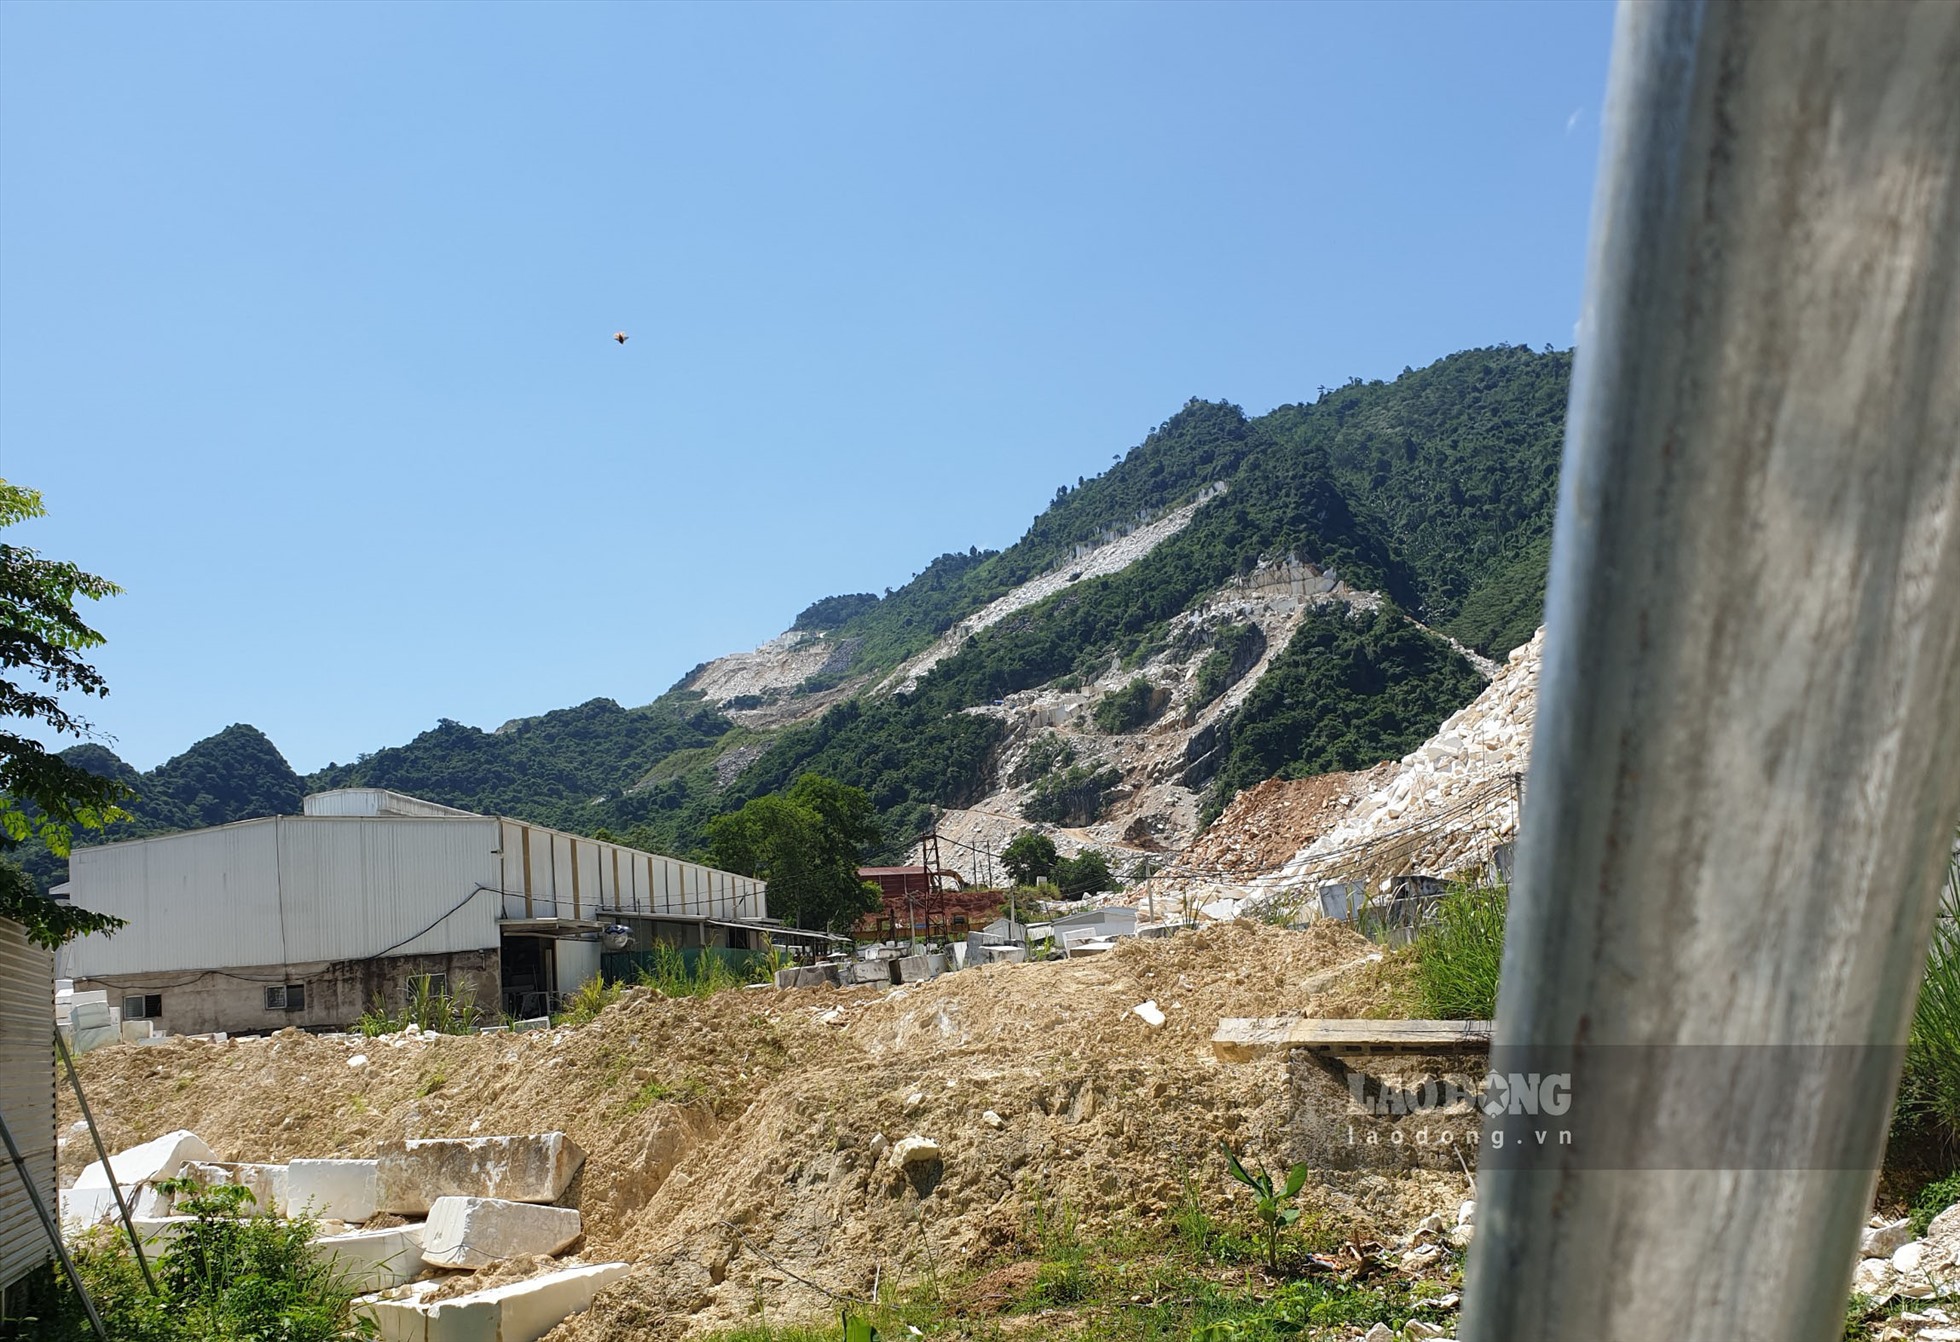 Bùn thải trong quá trình khai thác và chế tác đá của Công ty Thanh Sơn.